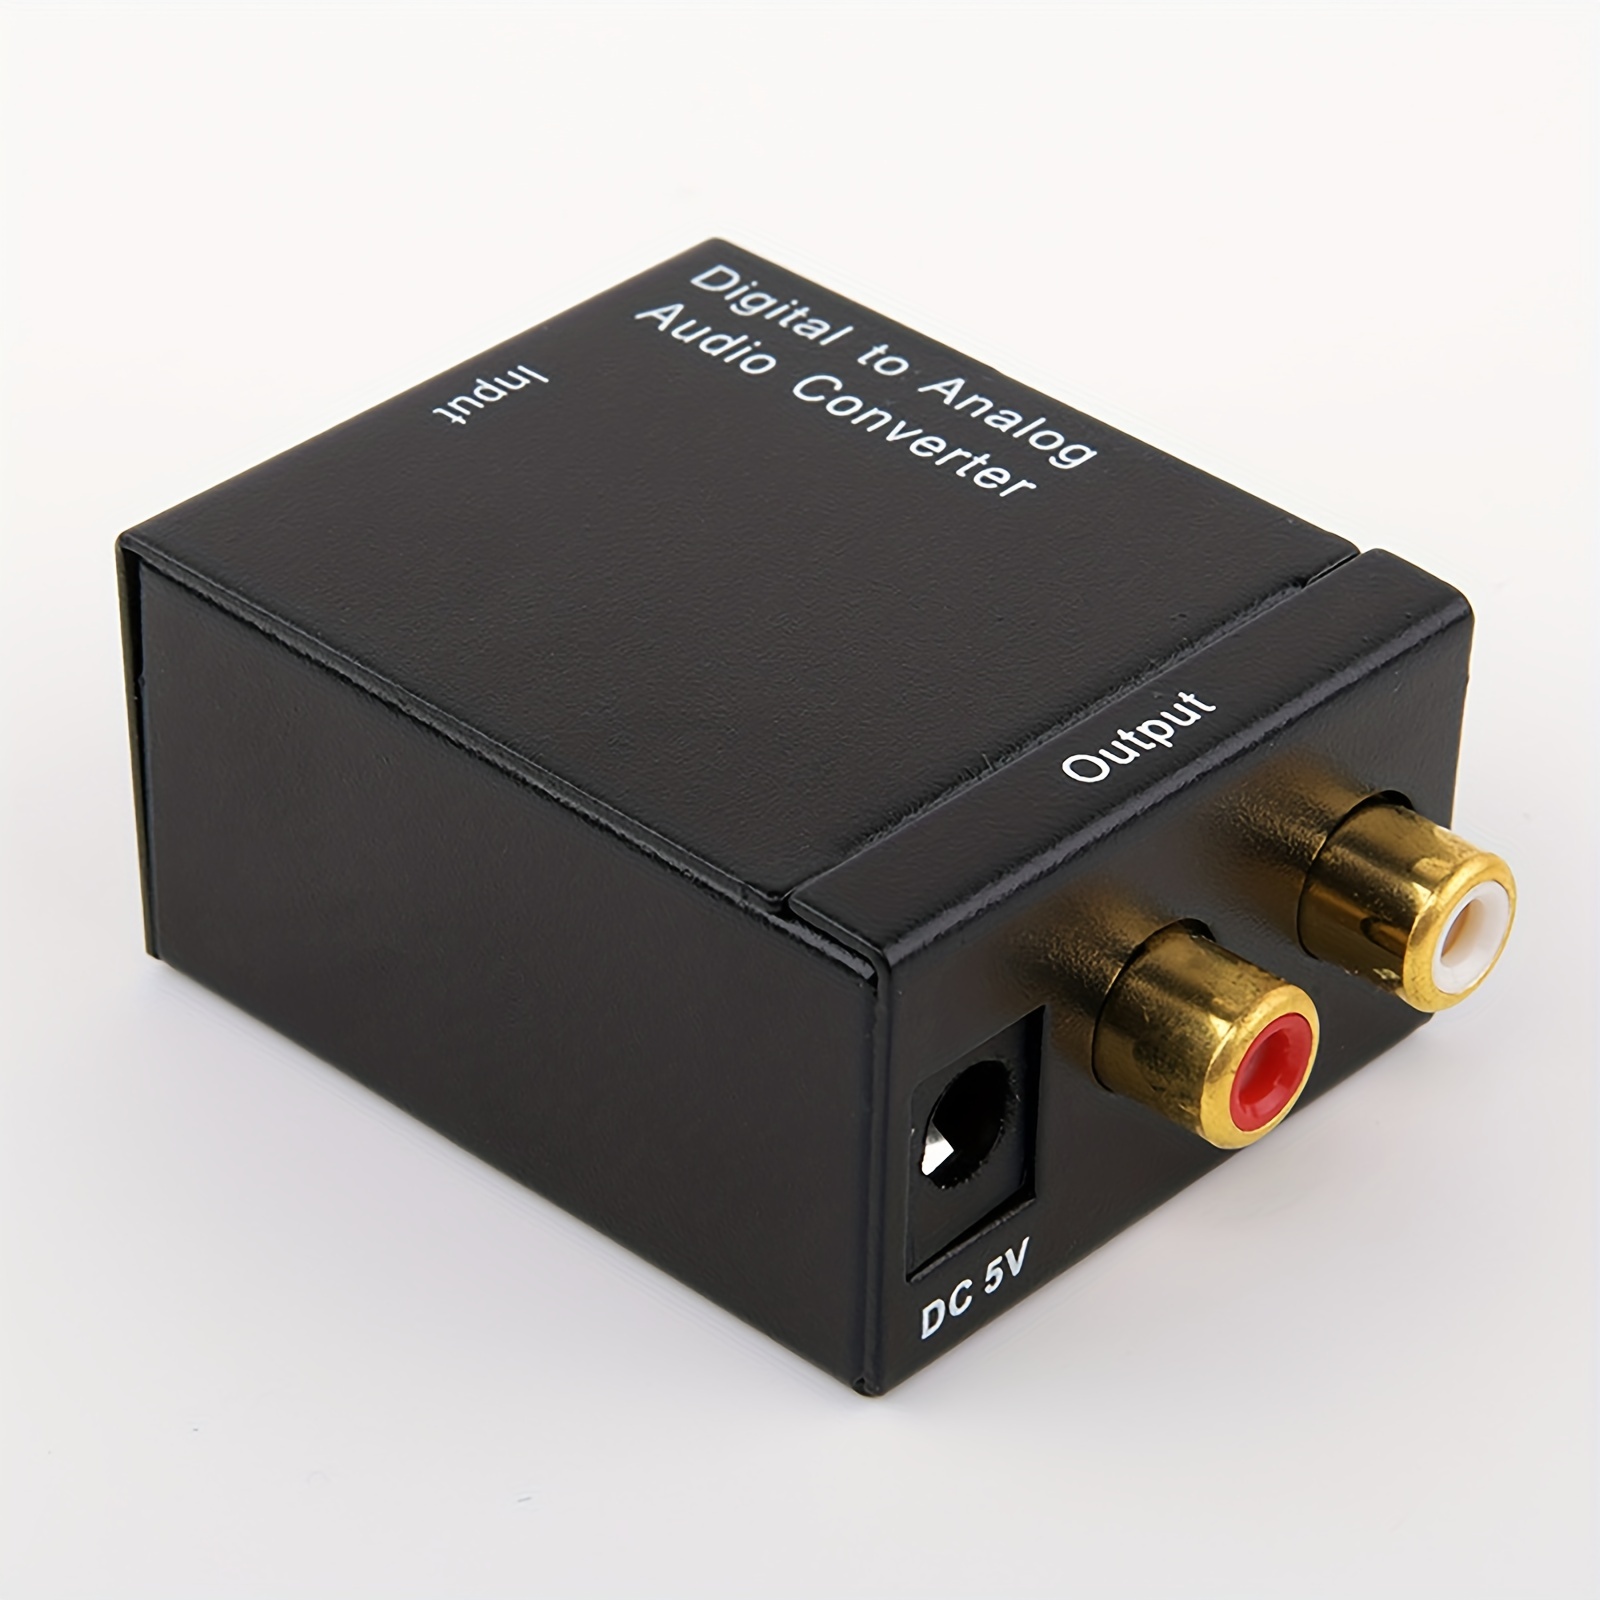 Cable de conversión de audio digital a analógico, SPDIF digital coaxial a  analógico L/R RCA y cable de audio estéreo AUX de 0.138 in para auriculares